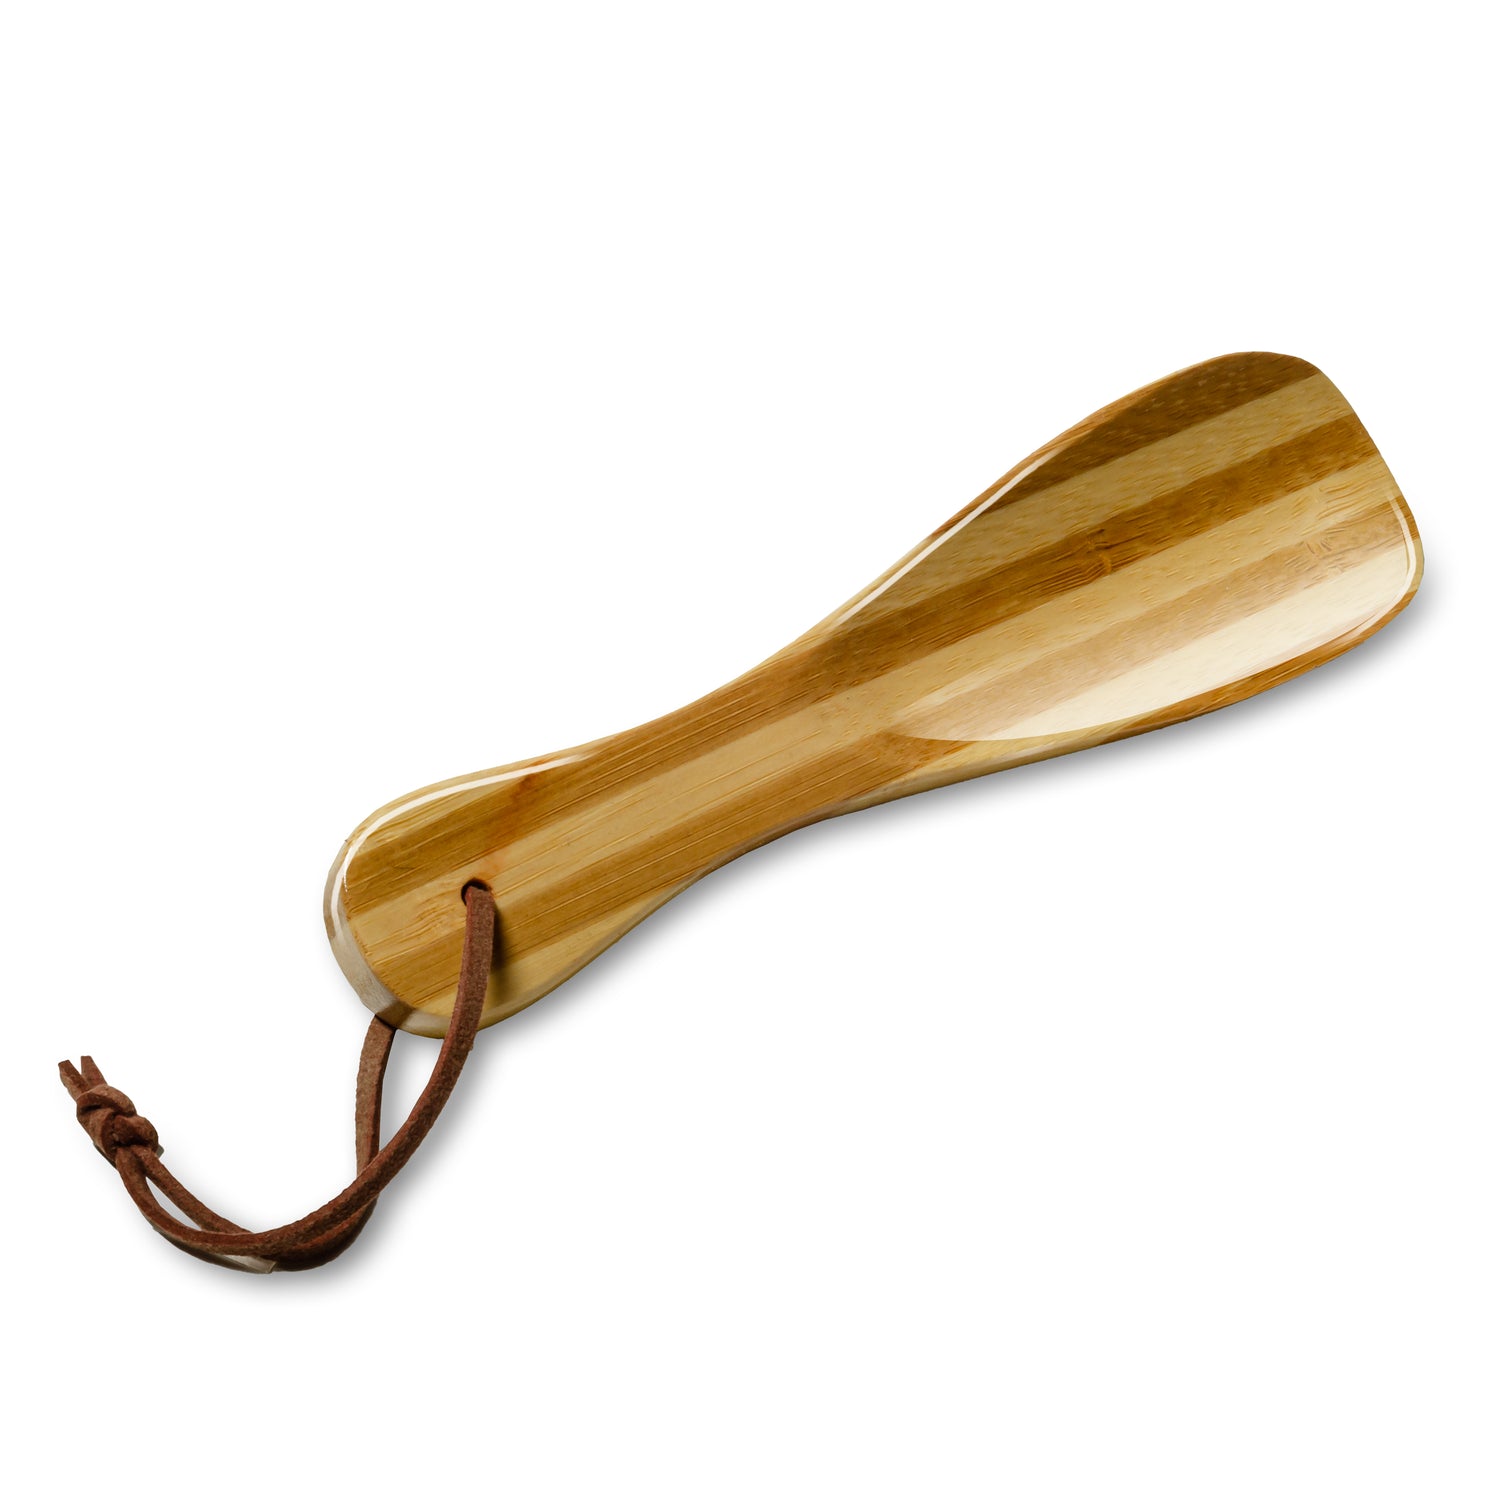 Schuhanzieher / Schuhlöffel Bambus-Holz lackiert 16 cm